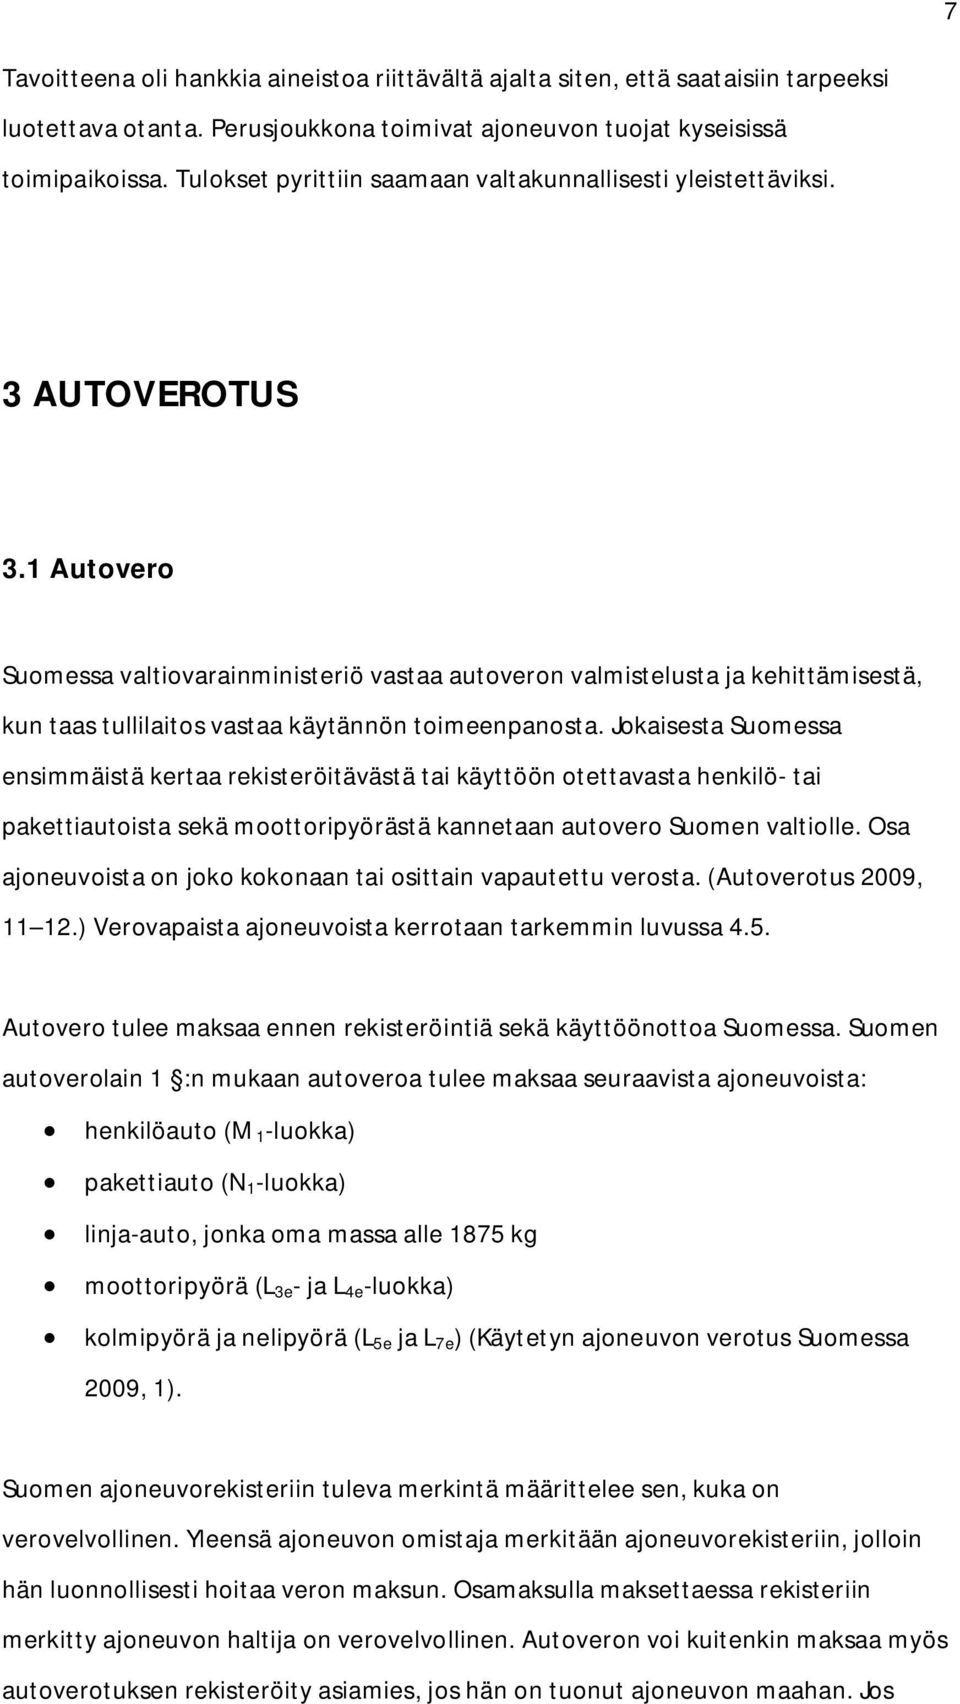 1 Autovero Suomessa valtiovarainministeriö vastaa autoveron valmistelusta ja kehittämisestä, kun taas tullilaitos vastaa käytännön toimeenpanosta.